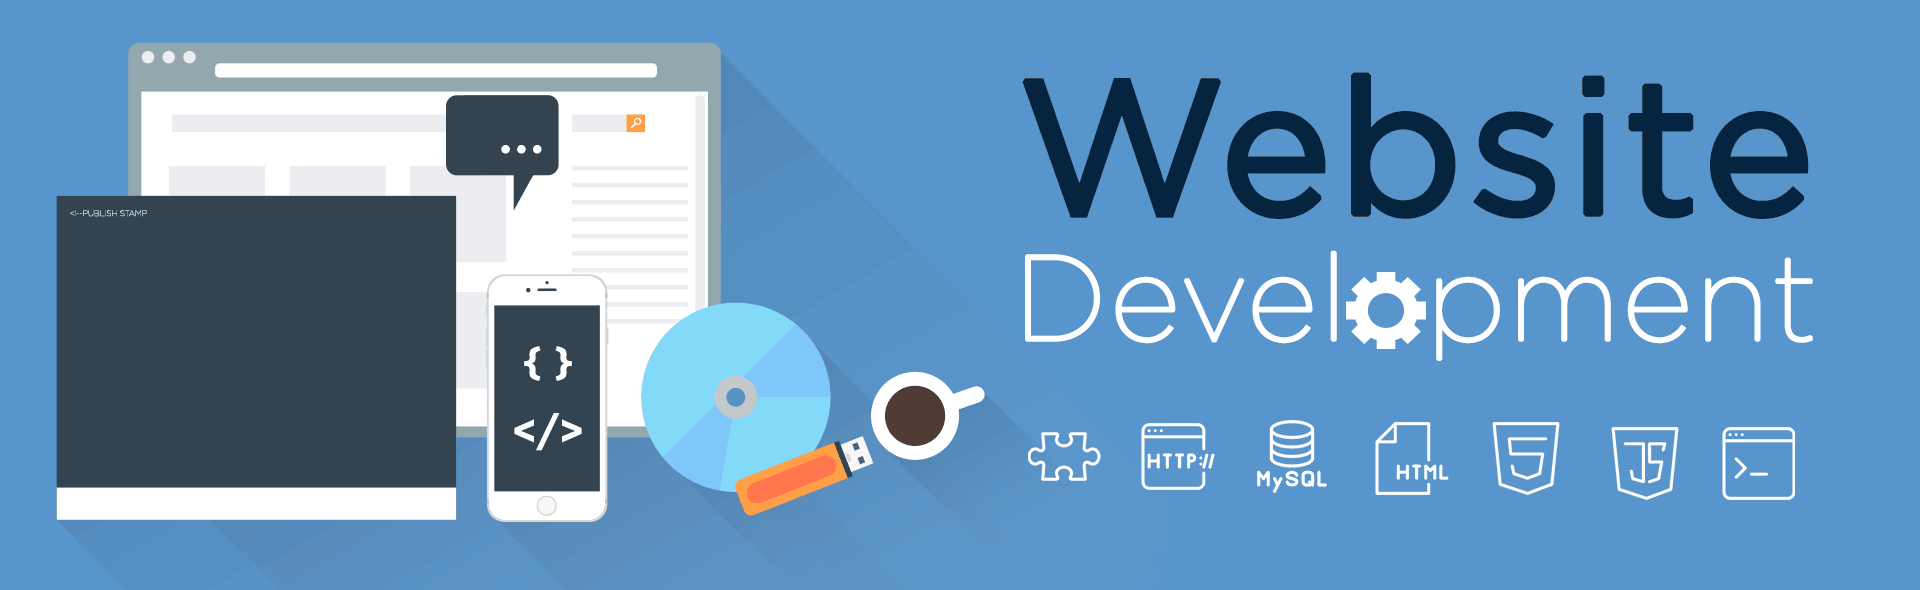 Web Development Company Delhi | Web Design Company, Website Design Company